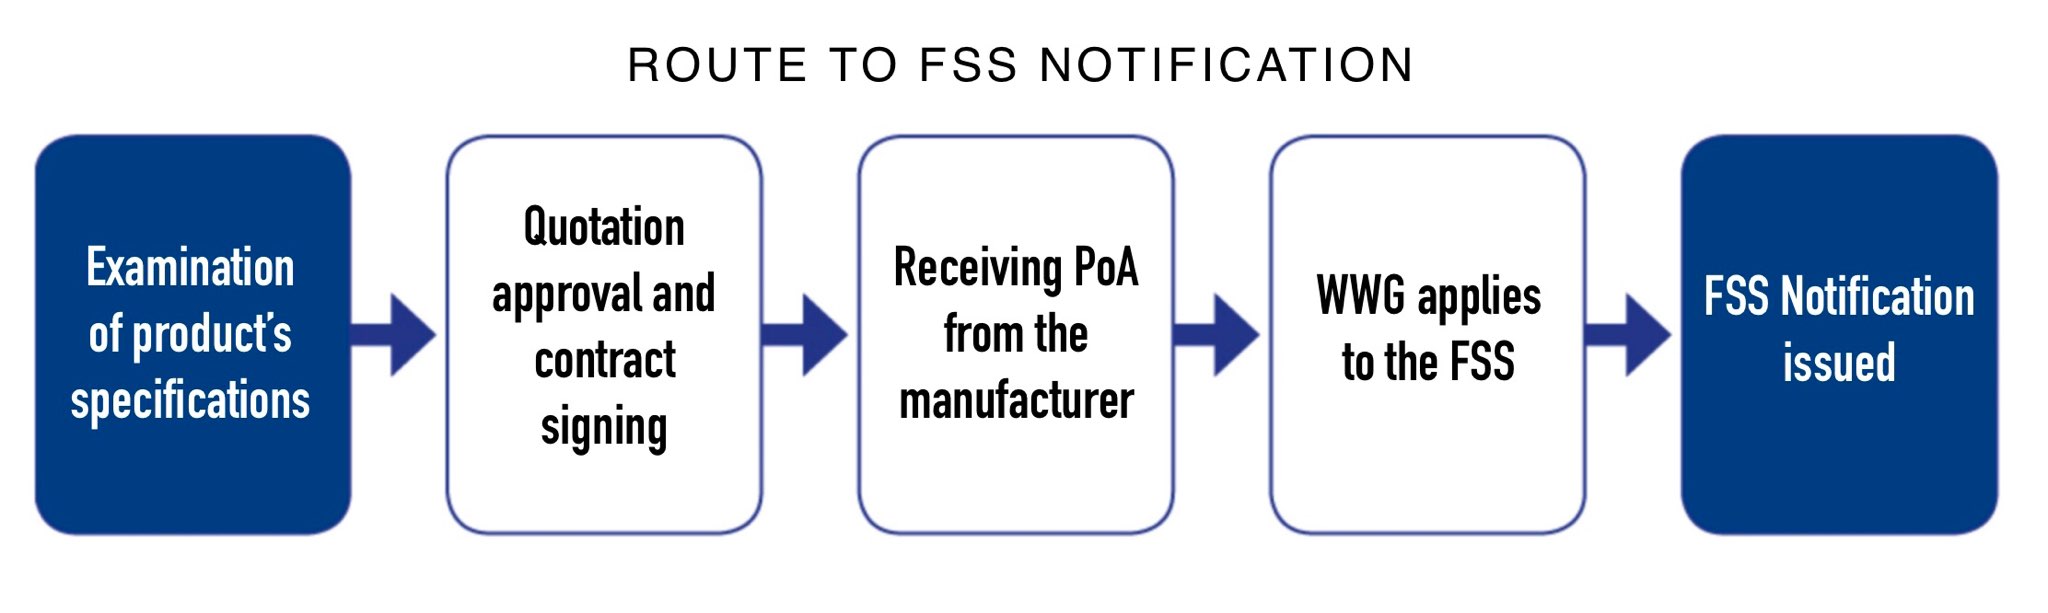 Router la notification FSS 1